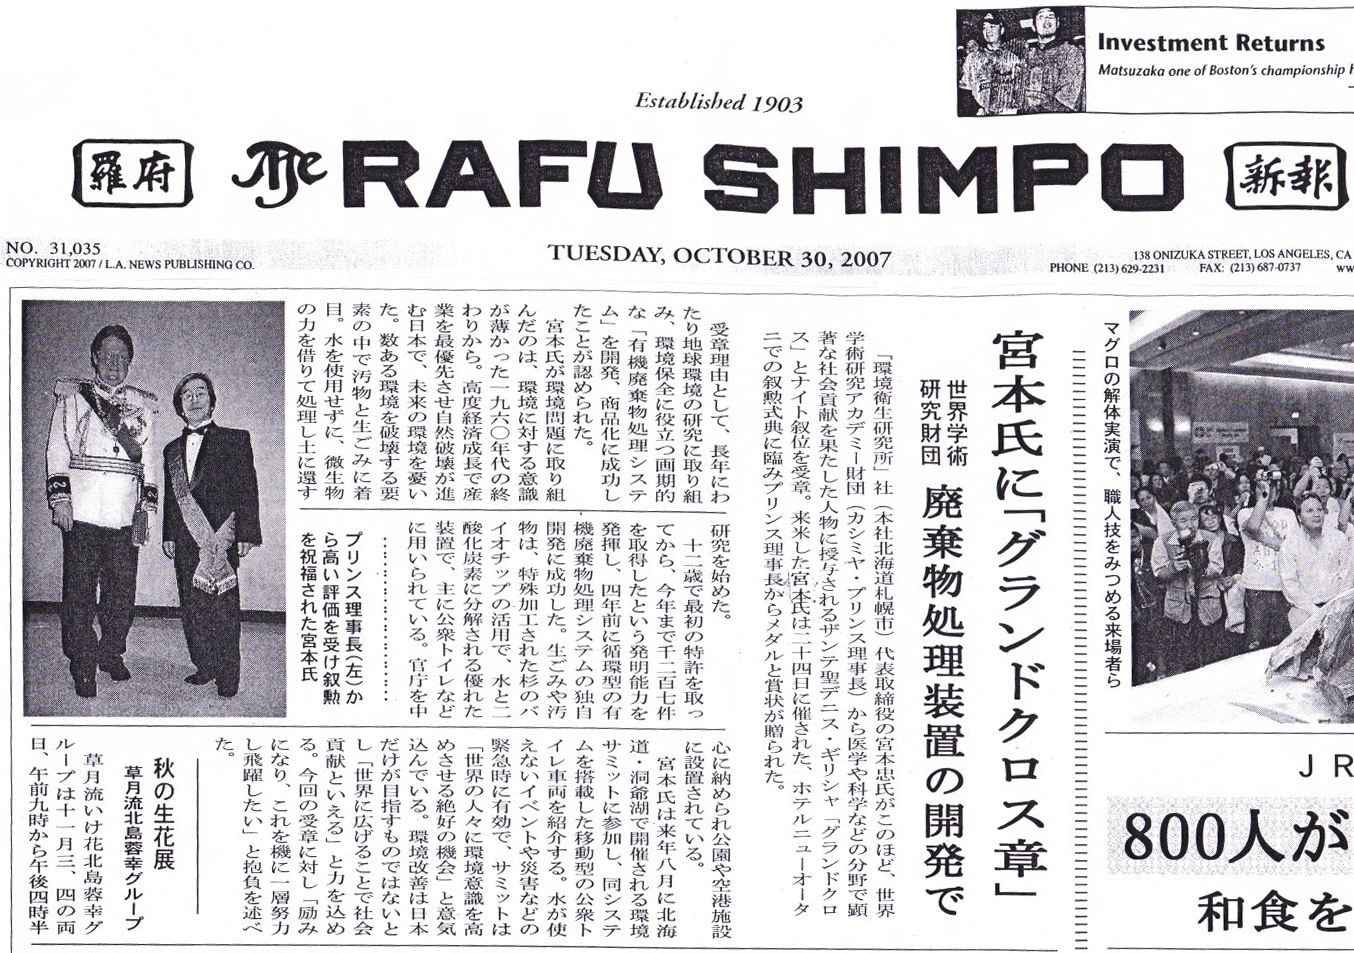 The RAFU SHIMPO